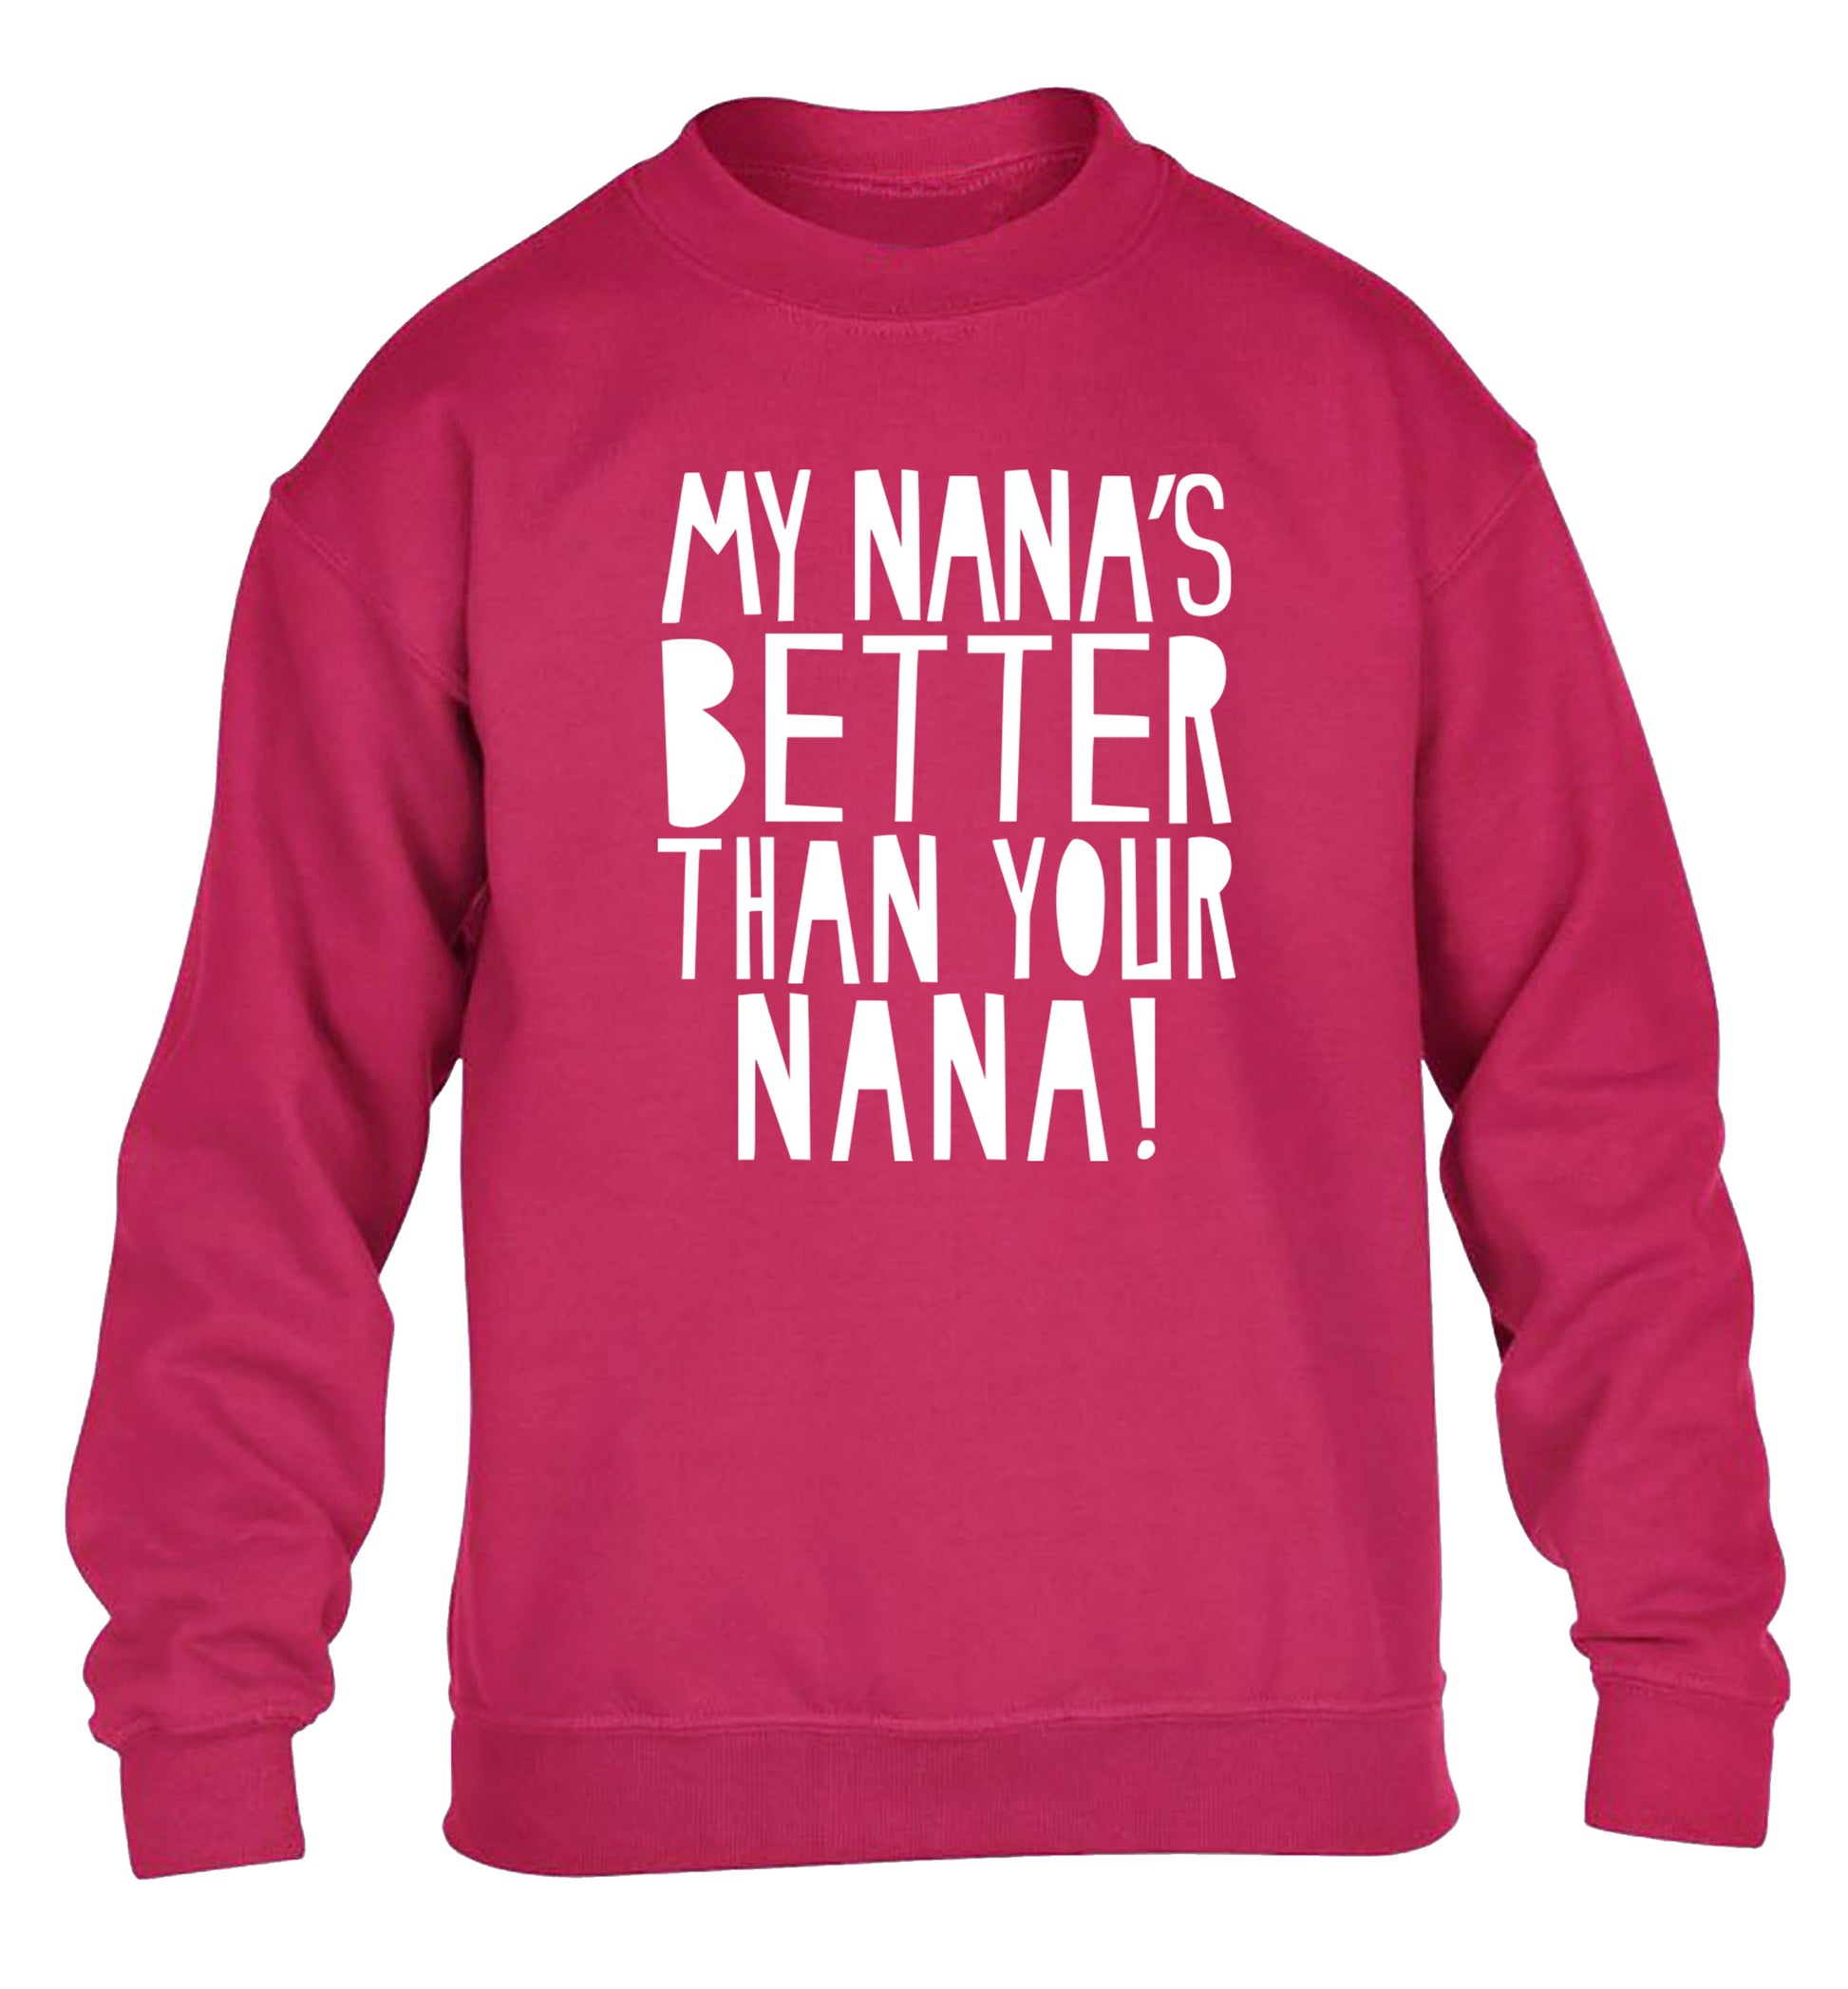 My nana's better than your nana children's pink sweater 12-13 Years